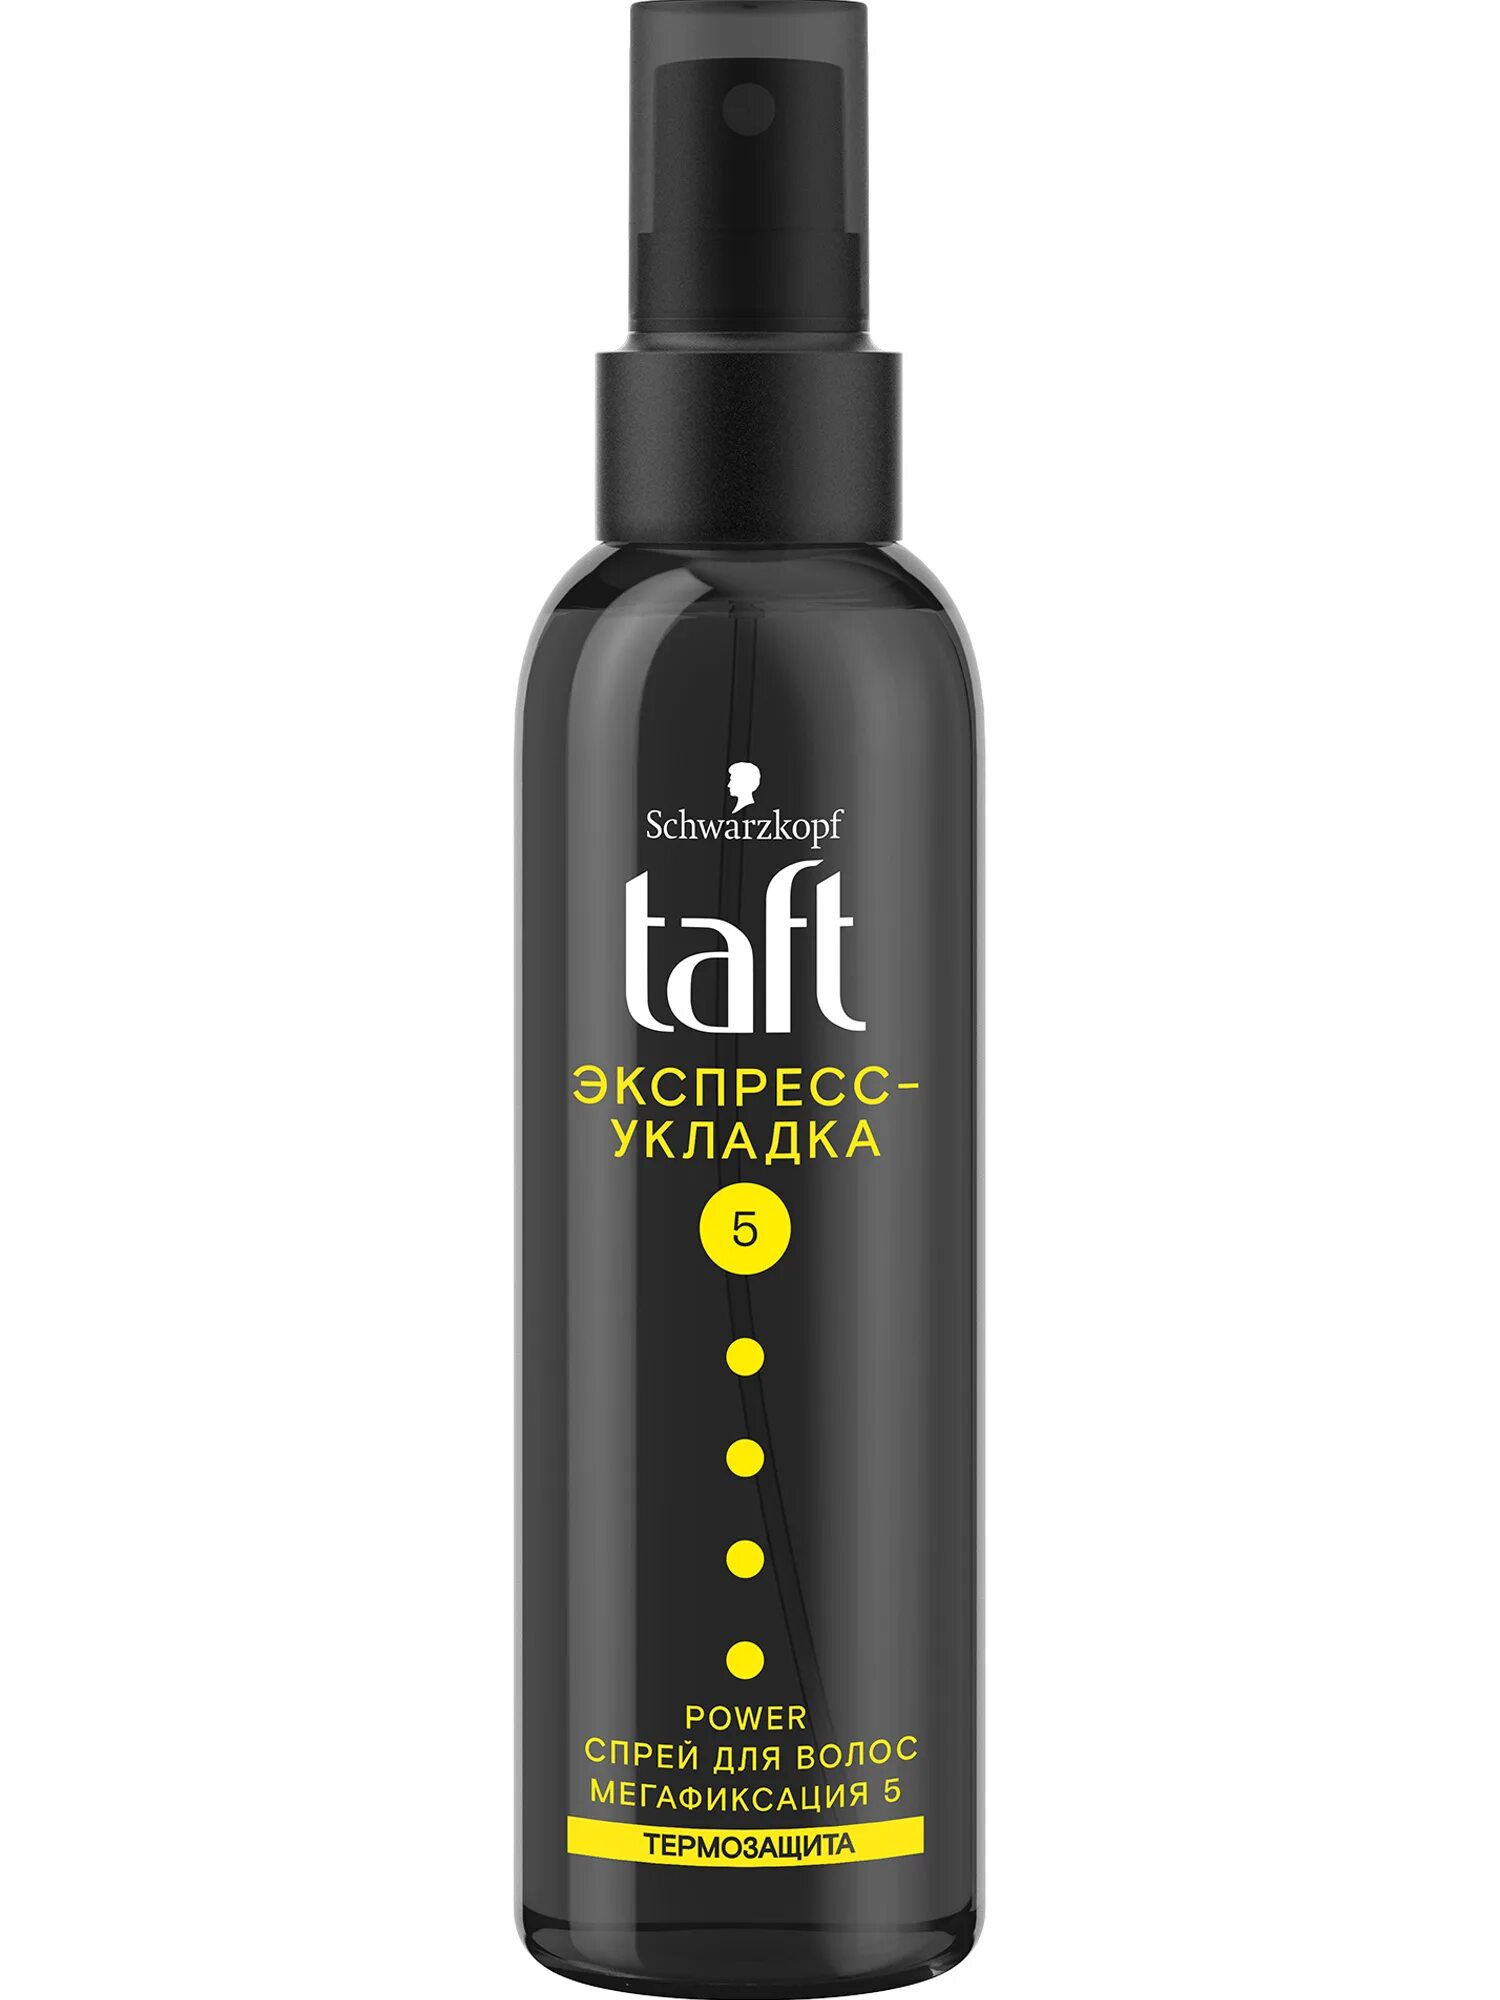 Черный спрей для волос. Taft гель спрей для волос 4. Спрей термозащита для укладки Taft. Taft спрей для волос "Power экспресс-укладка" 150мл. Тафт для укладки волос Taft Power.